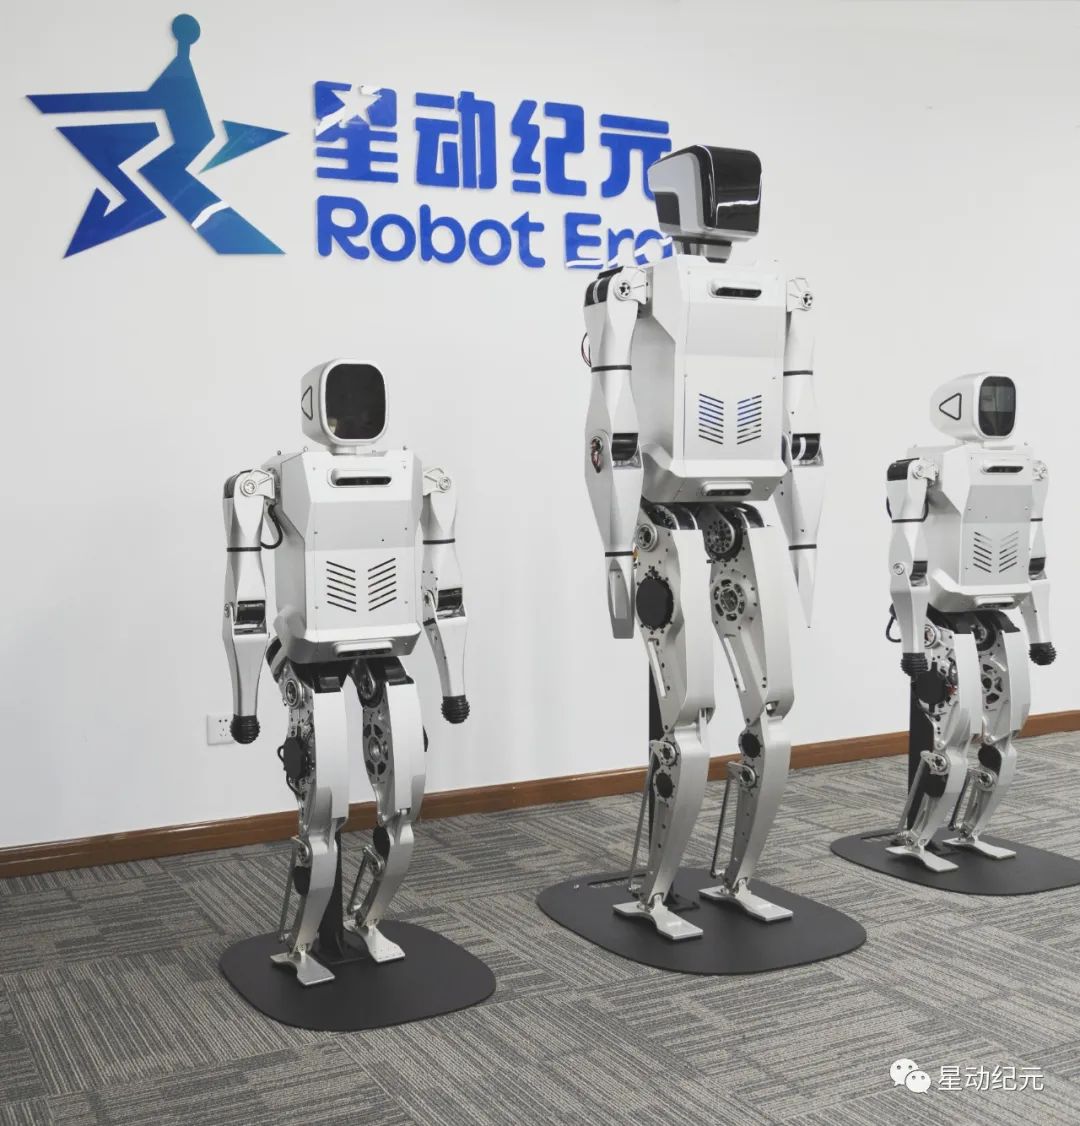 中国“四大美女”机器人，谁最漂亮？-蜡像 蜡像制作 硅胶像 硅像 仿真人像 硅胶人像 硅胶像定制 西安超人雕塑研究院